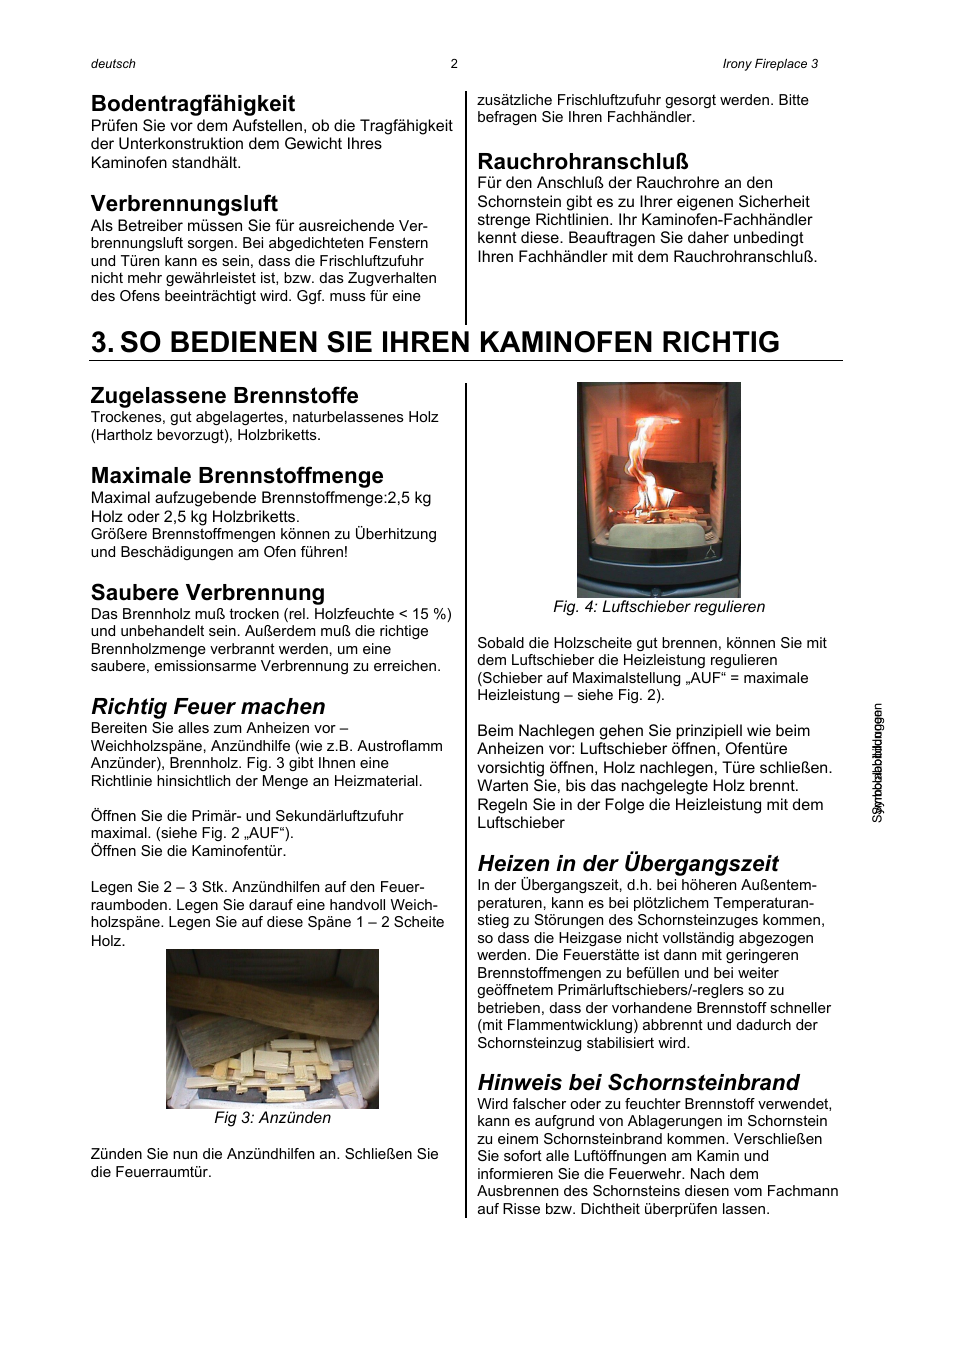 So bedienen sie ihren kaminofen richtig, Bodentragfähigkeit,  Verbrennungsluft | Austroflamm Irony Fireplace 3 User Manual | Page 4 / 16